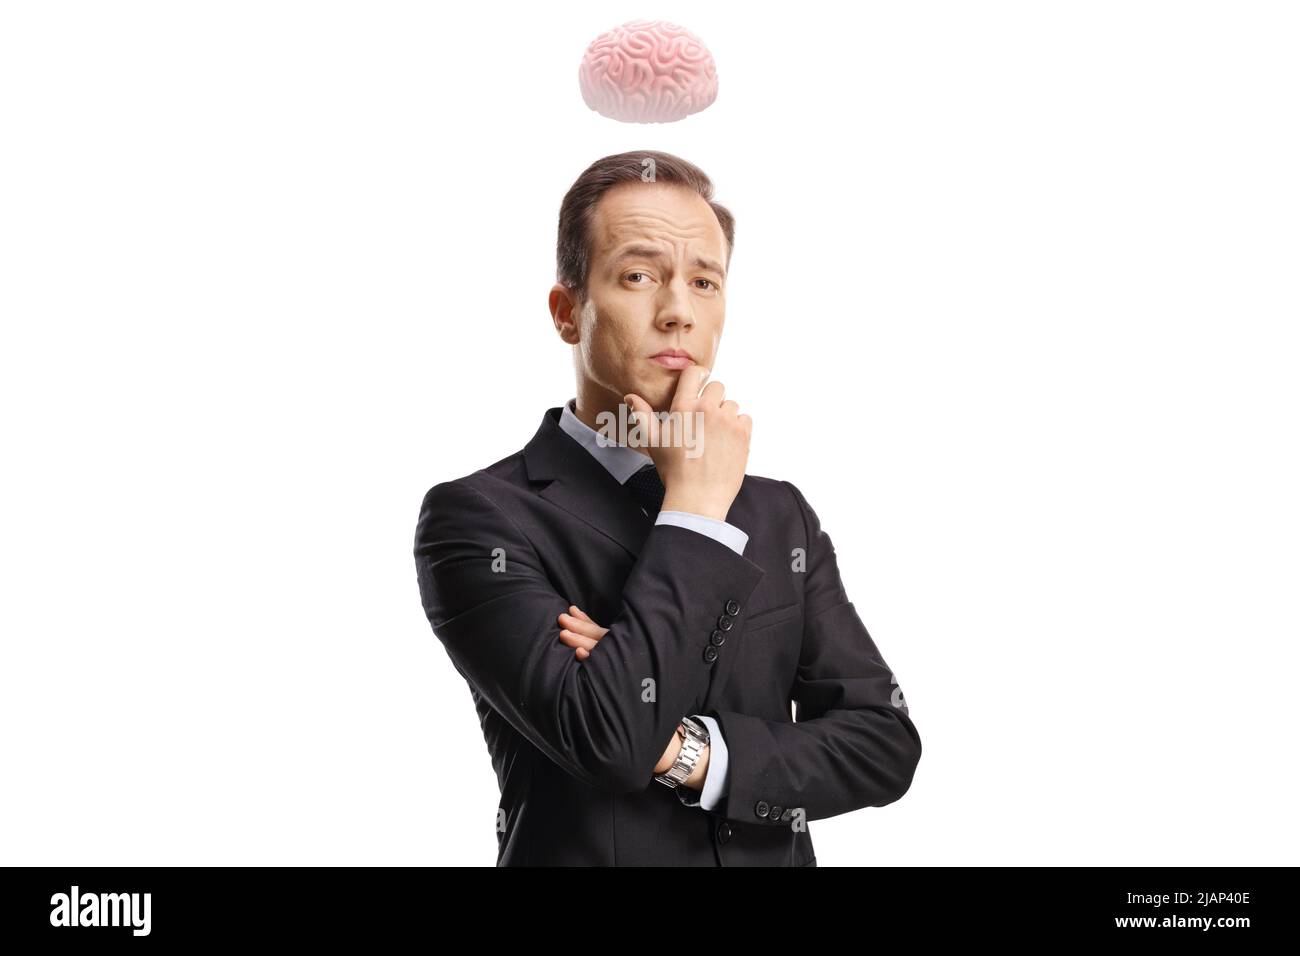 Cerveau humain au-dessus d'un homme d'affaires pensif tenant son menton isolé sur fond blanc Banque D'Images